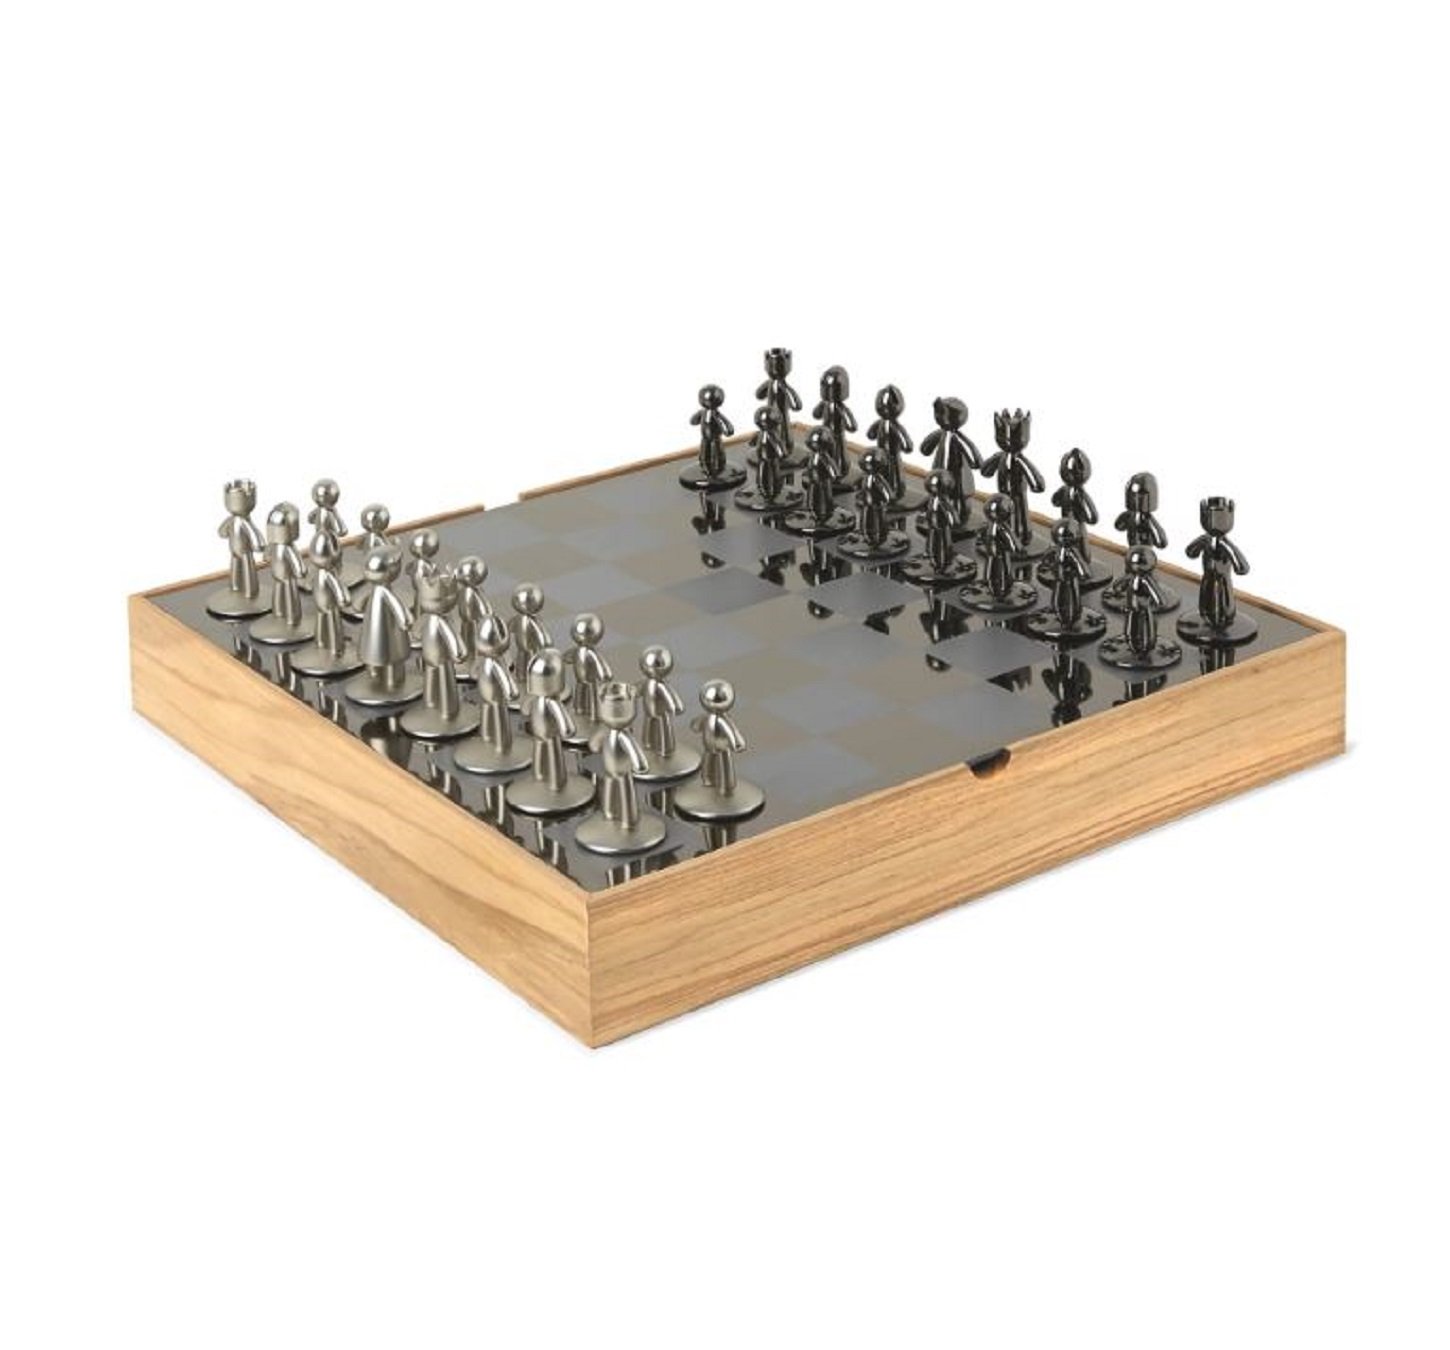 Umbra Buddy Chess Set hier bestellen im aoshop.de online kaufen